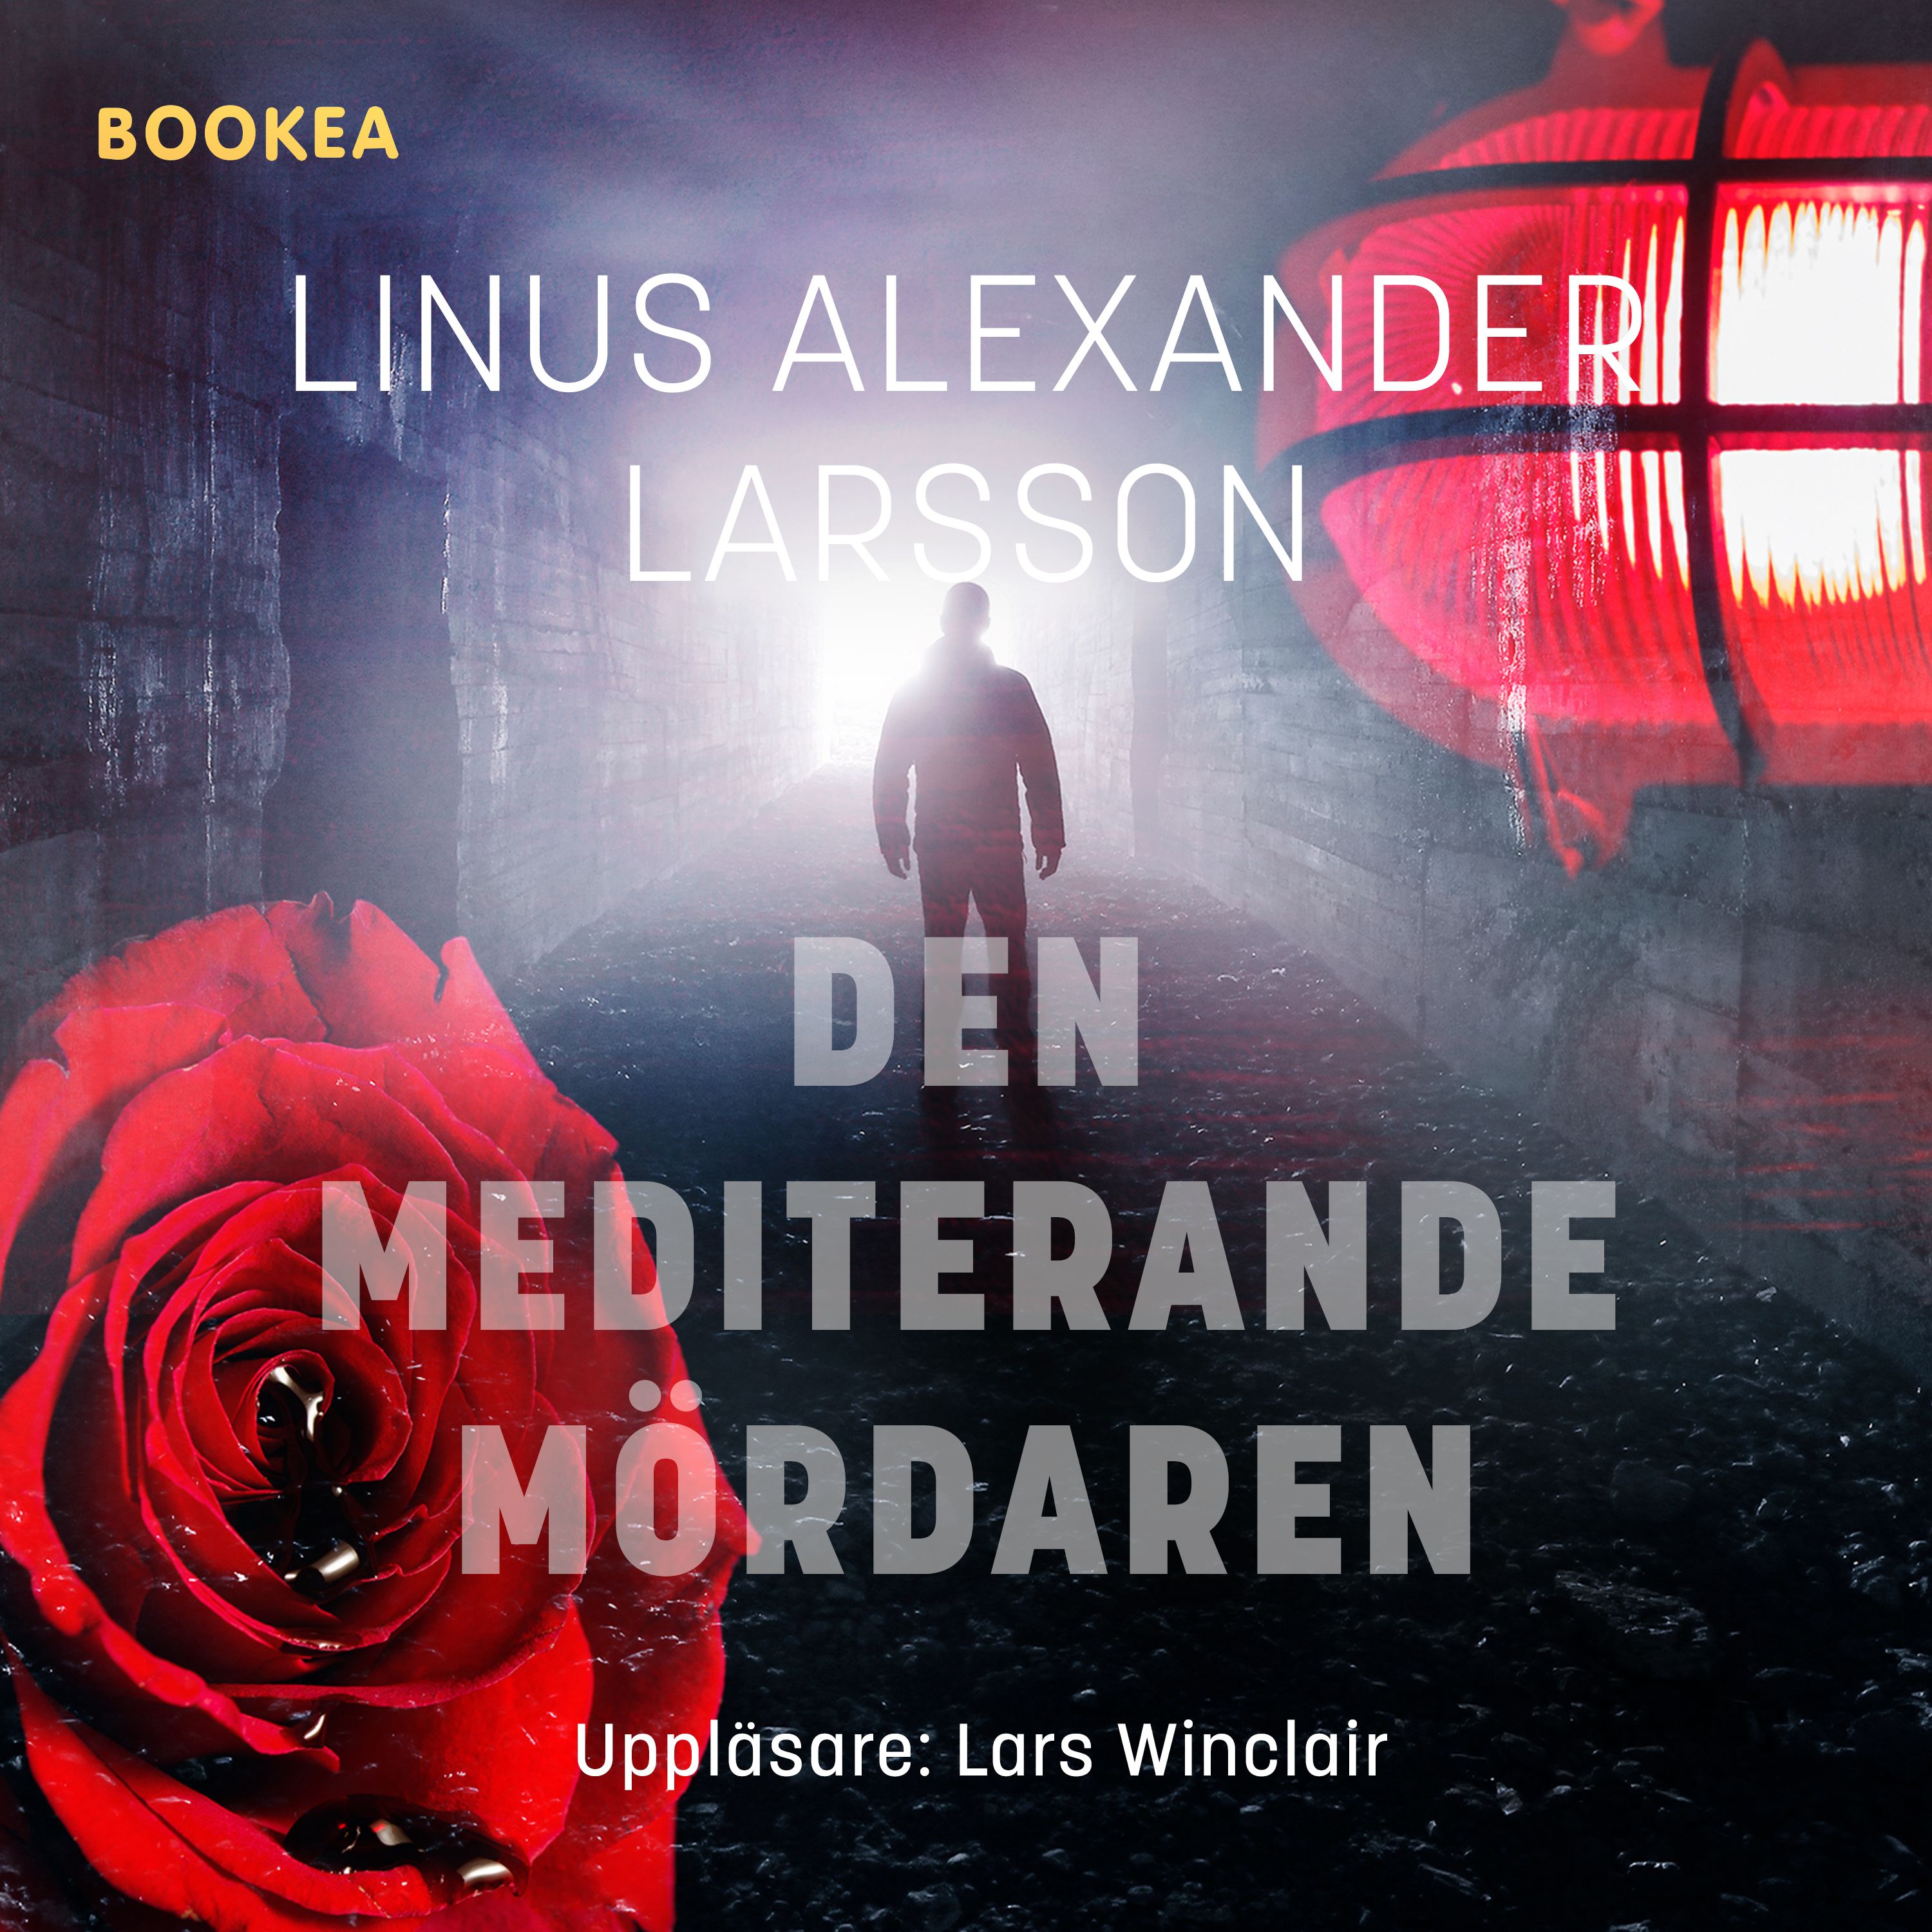 Den mediterande mördaren, ljudbok av Linus Alexander Larsson